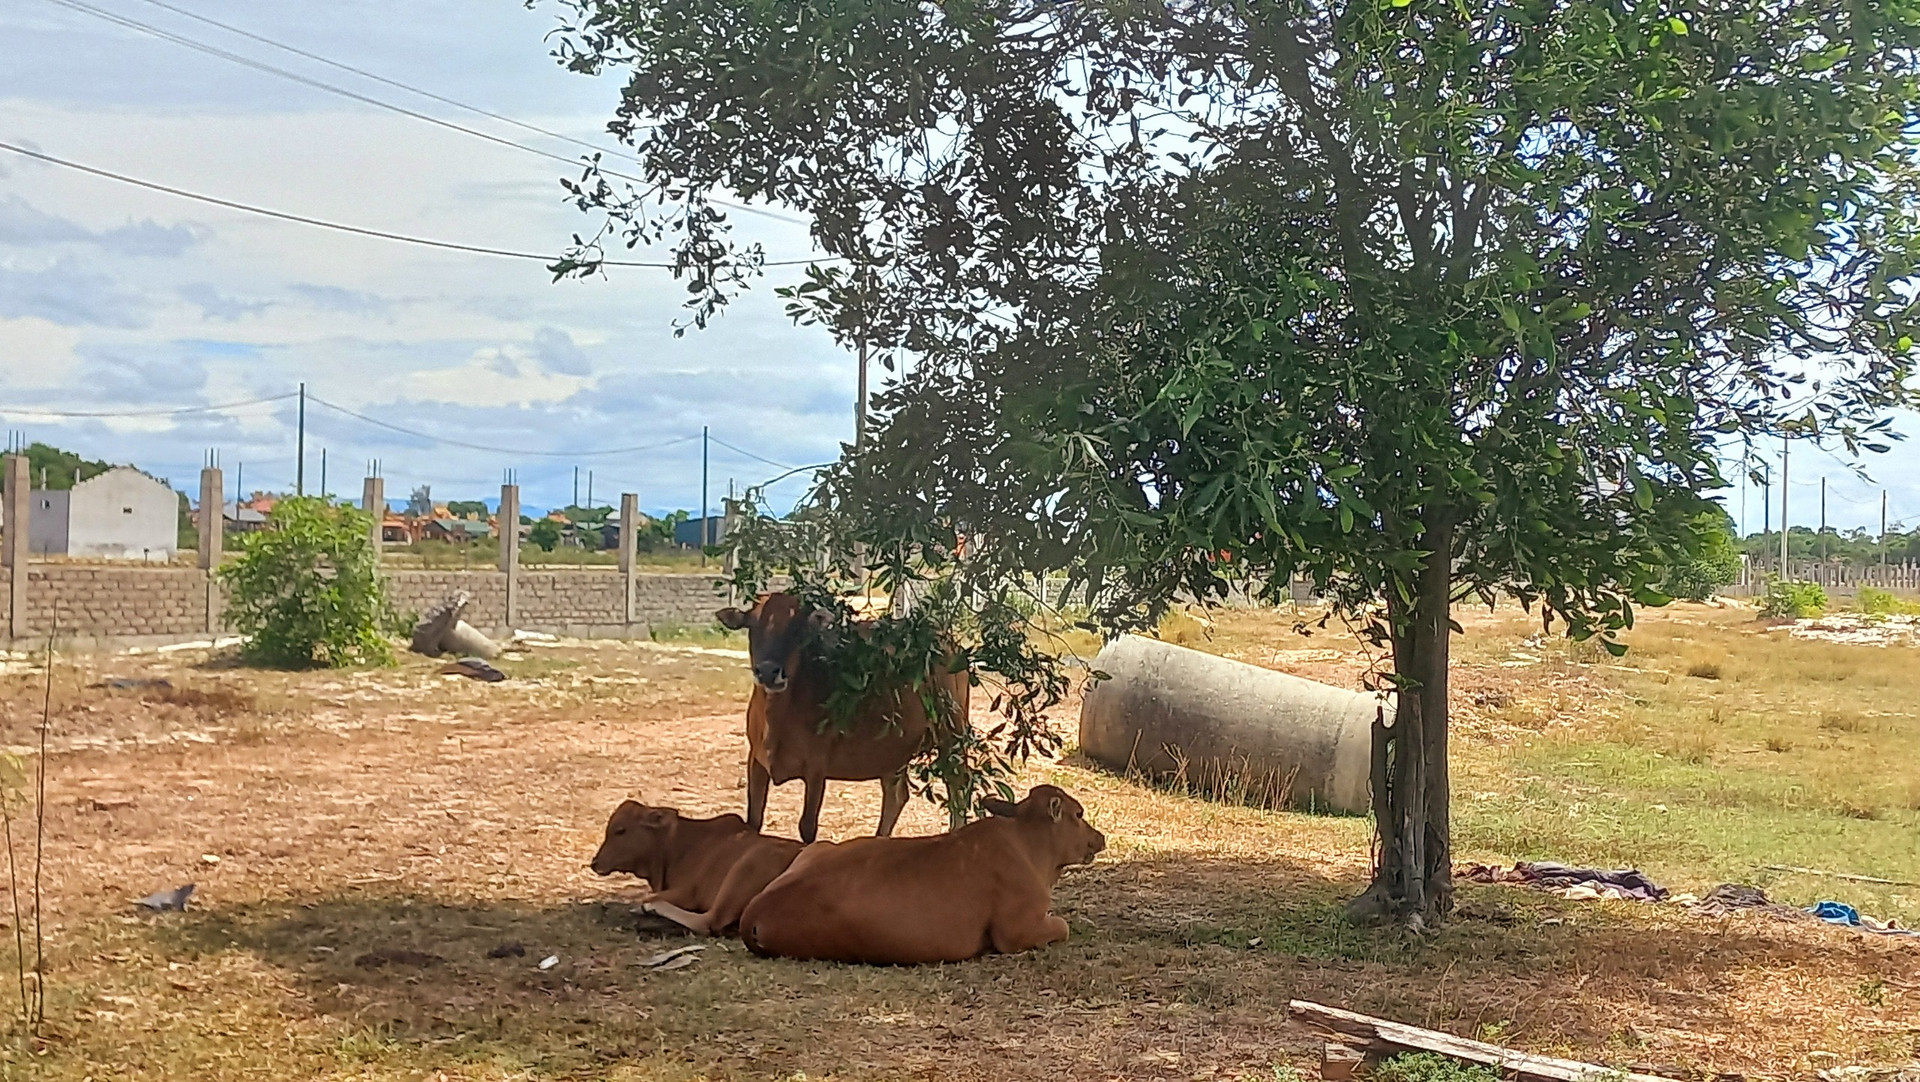 Những con bò cũng tận dụng bóng mát của cây trong khuôn viên này để làm chỗ tránh nắng.